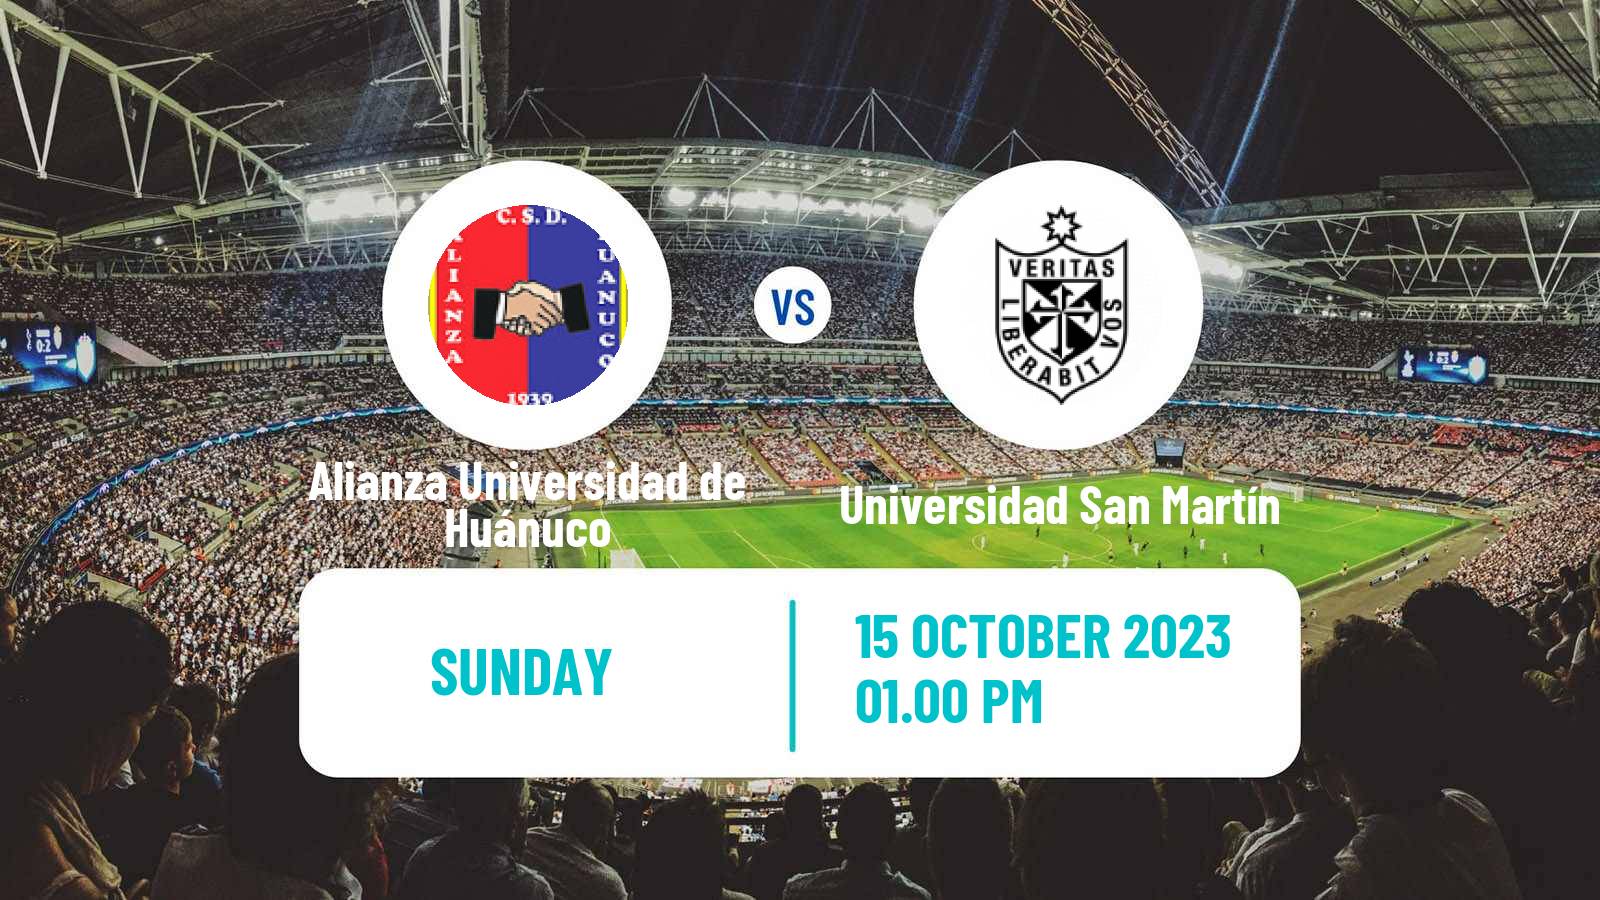 Soccer Peruvian Liga 2 Alianza Universidad de Huánuco - Universidad San Martín